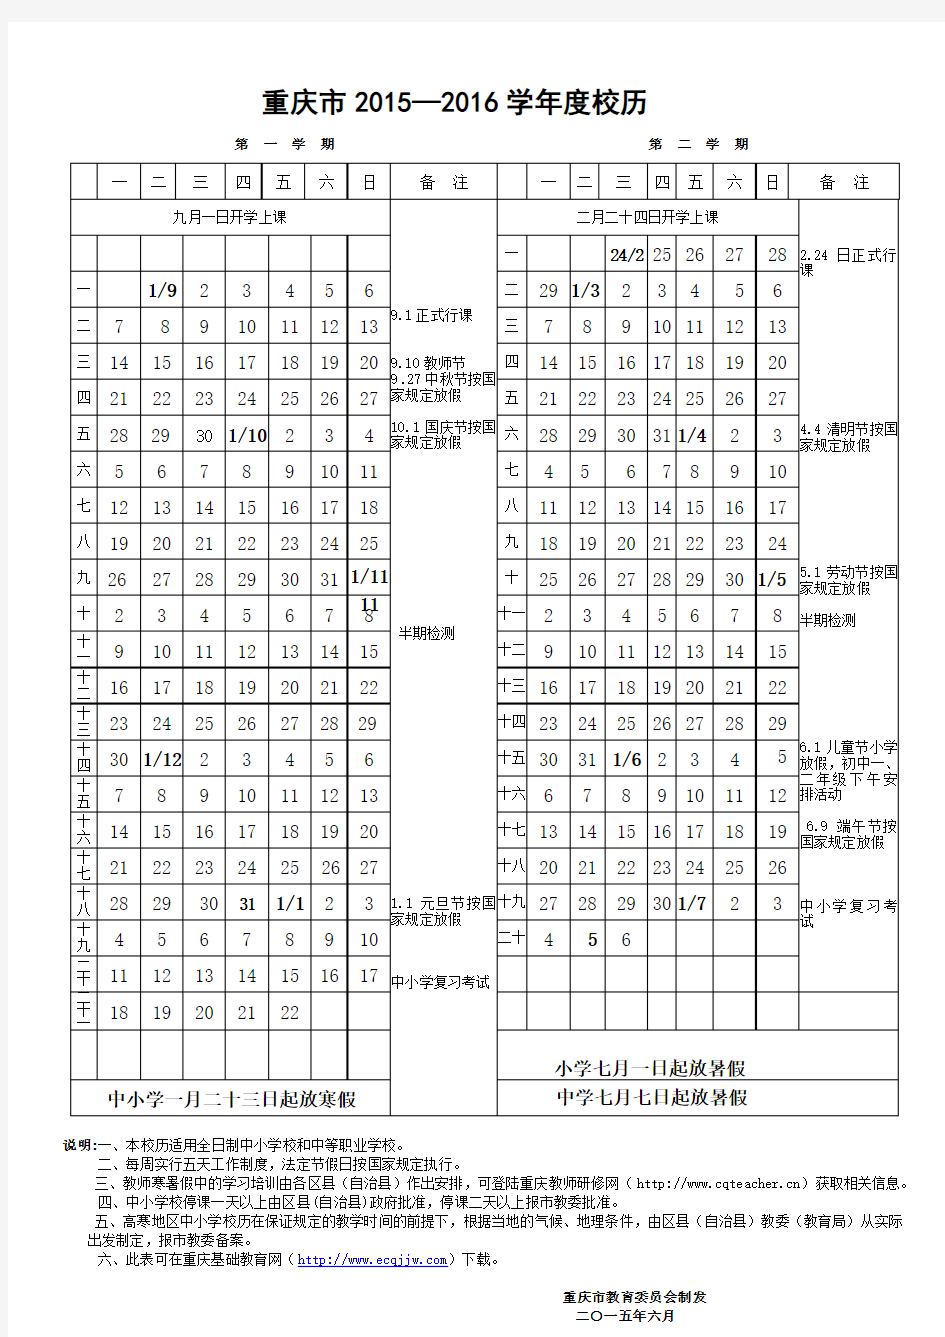 重庆市2015—2016学年度校历